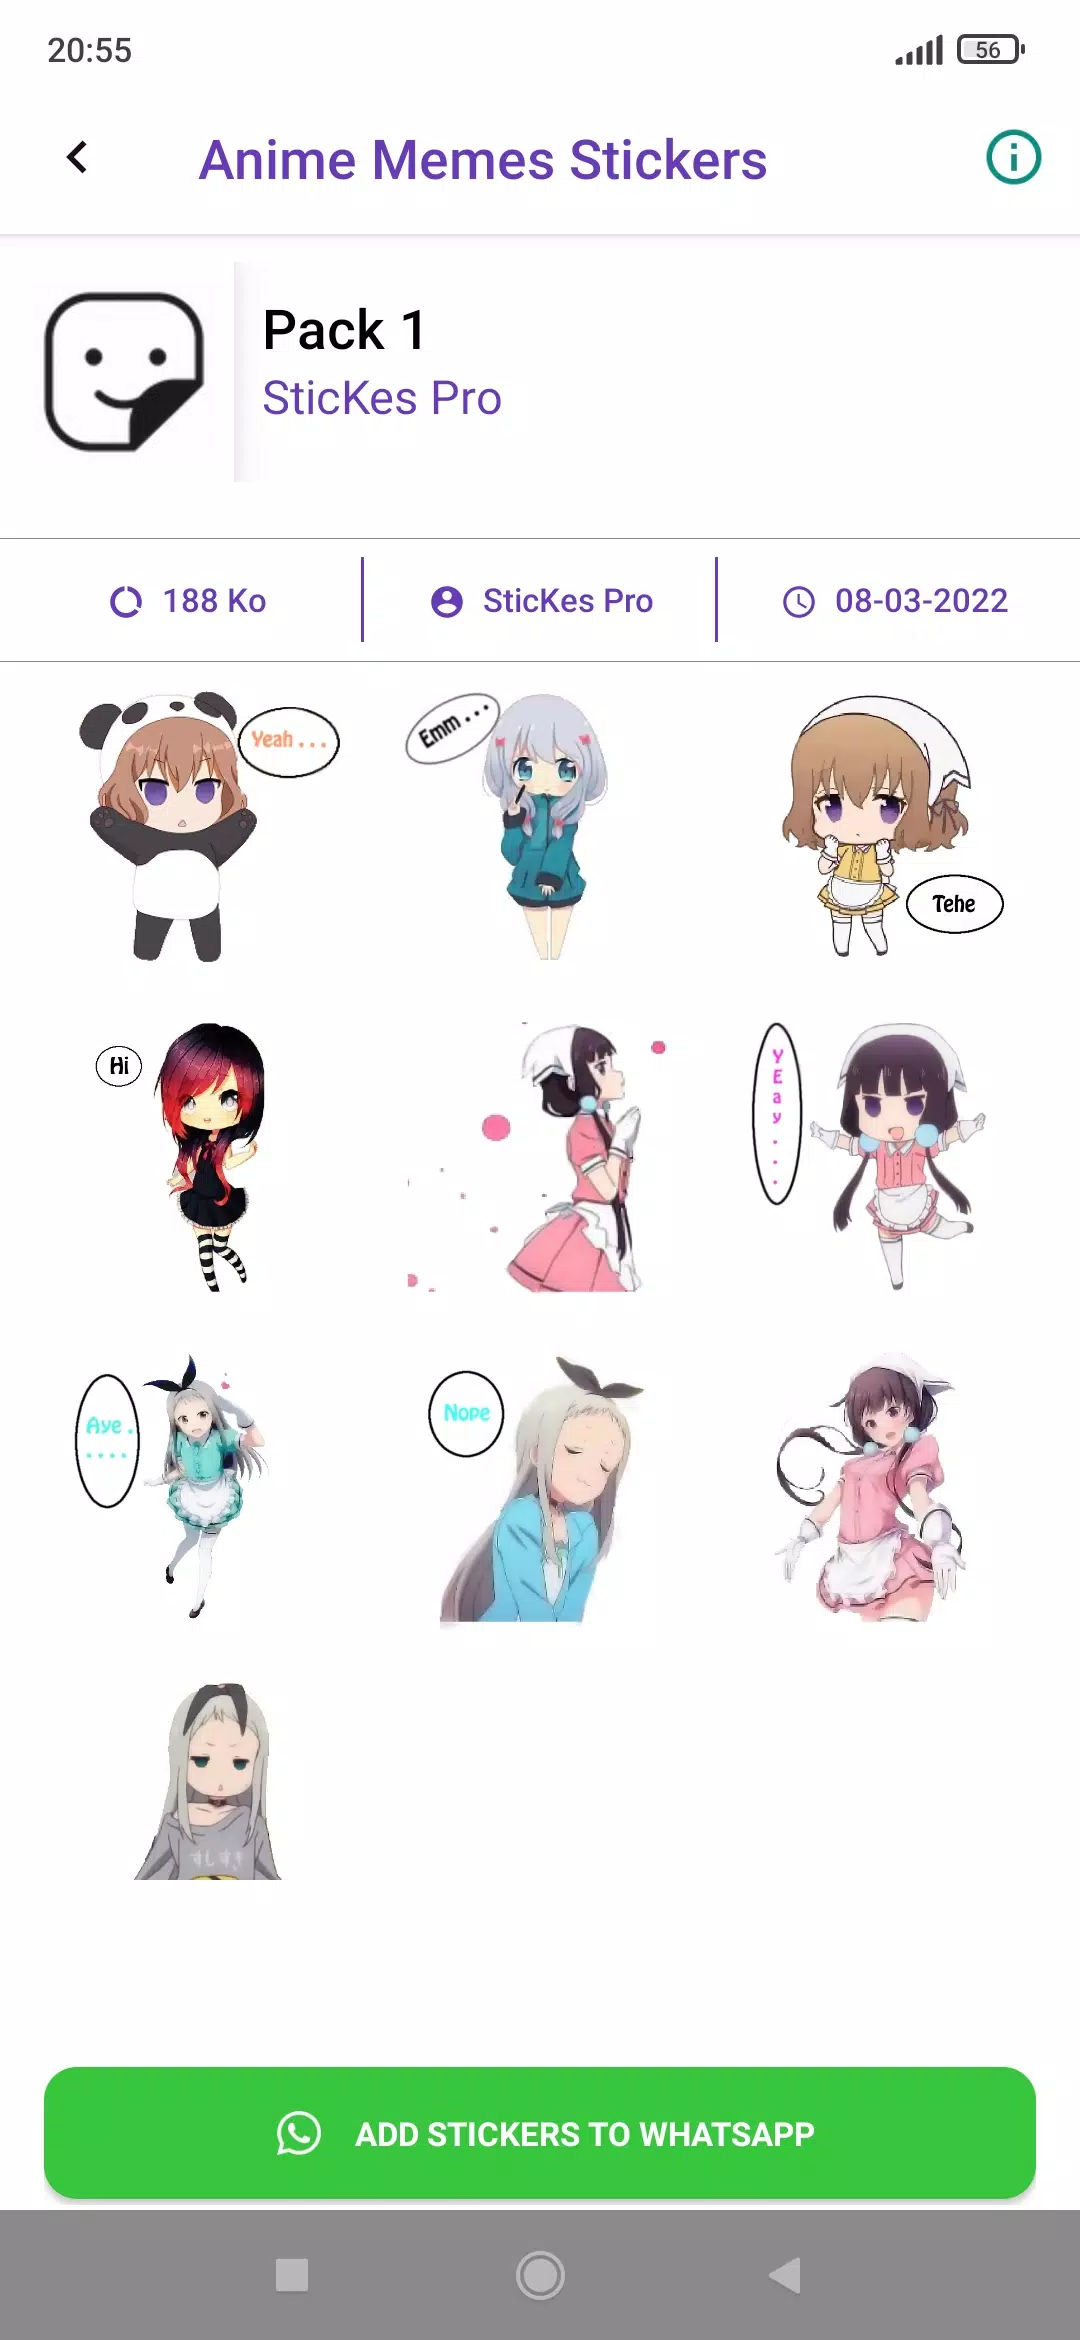 Sticker Maker - Anime/meme sticker pack